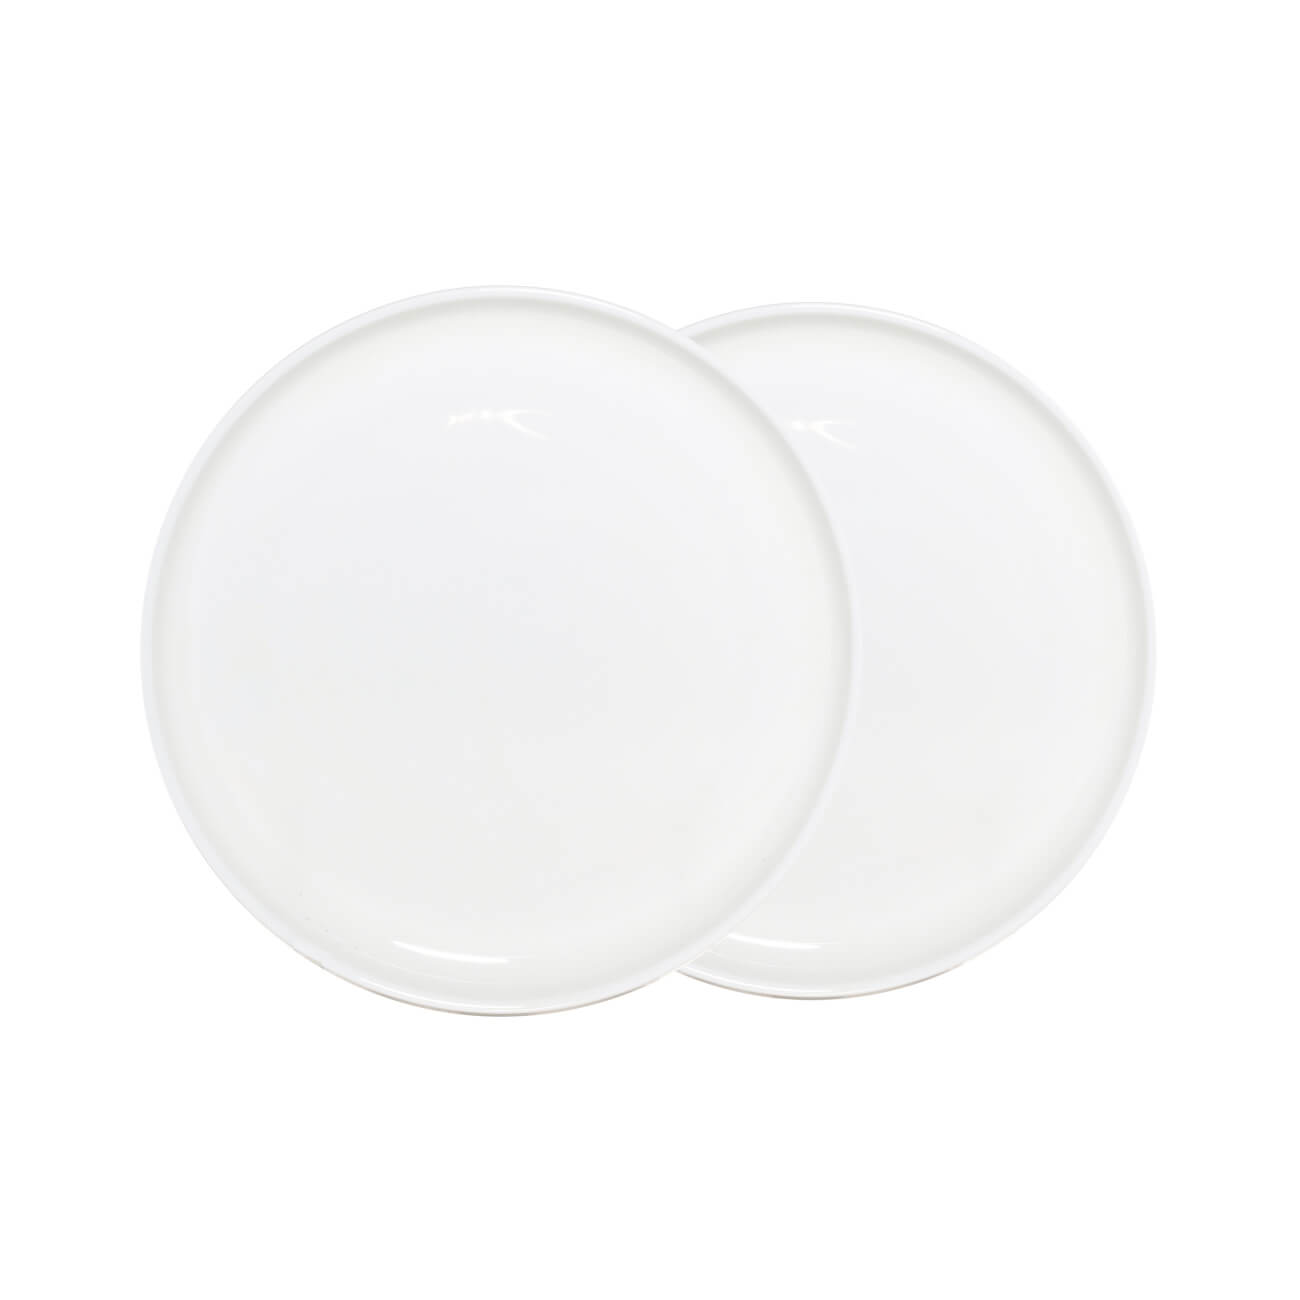 Тарелка десертная, 20 см, 2 шт, фарфор F, белая, Ideal white тарелка десертная luminarc дивали лайт тюркуаз p2613 19см